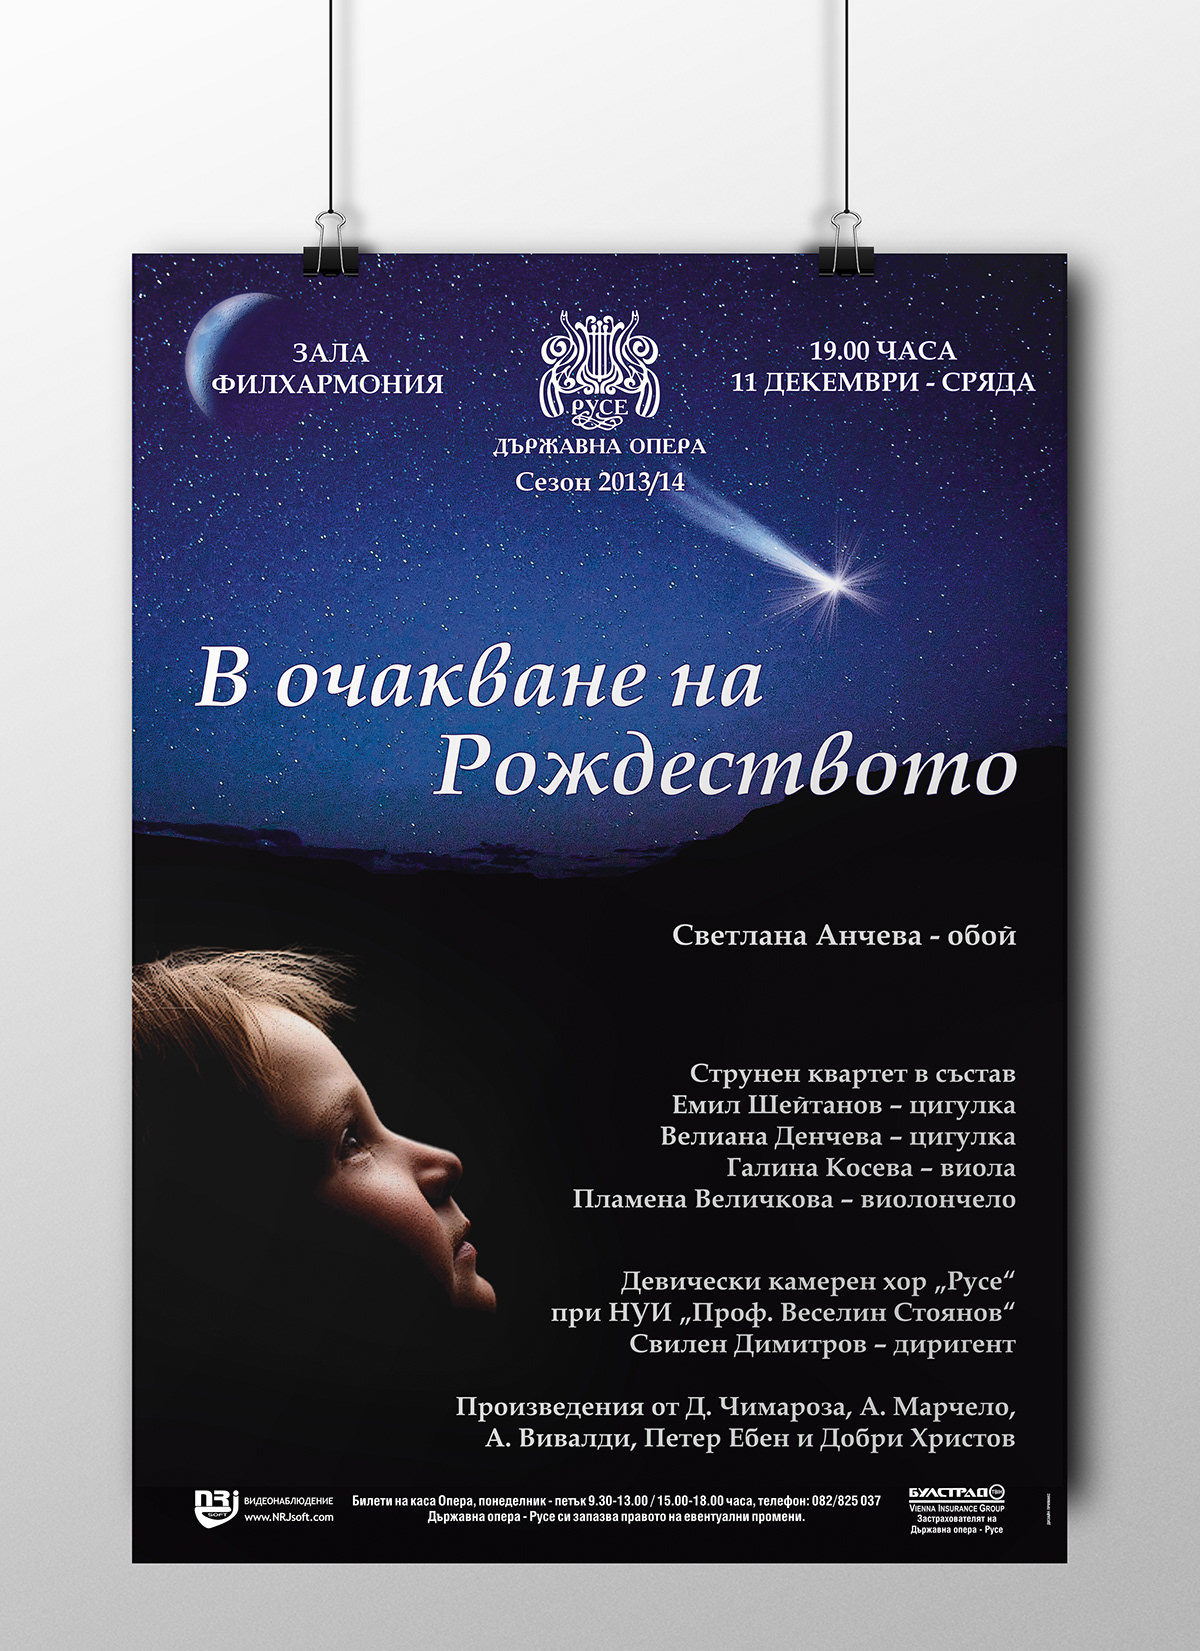 opera poster advertisement nativity